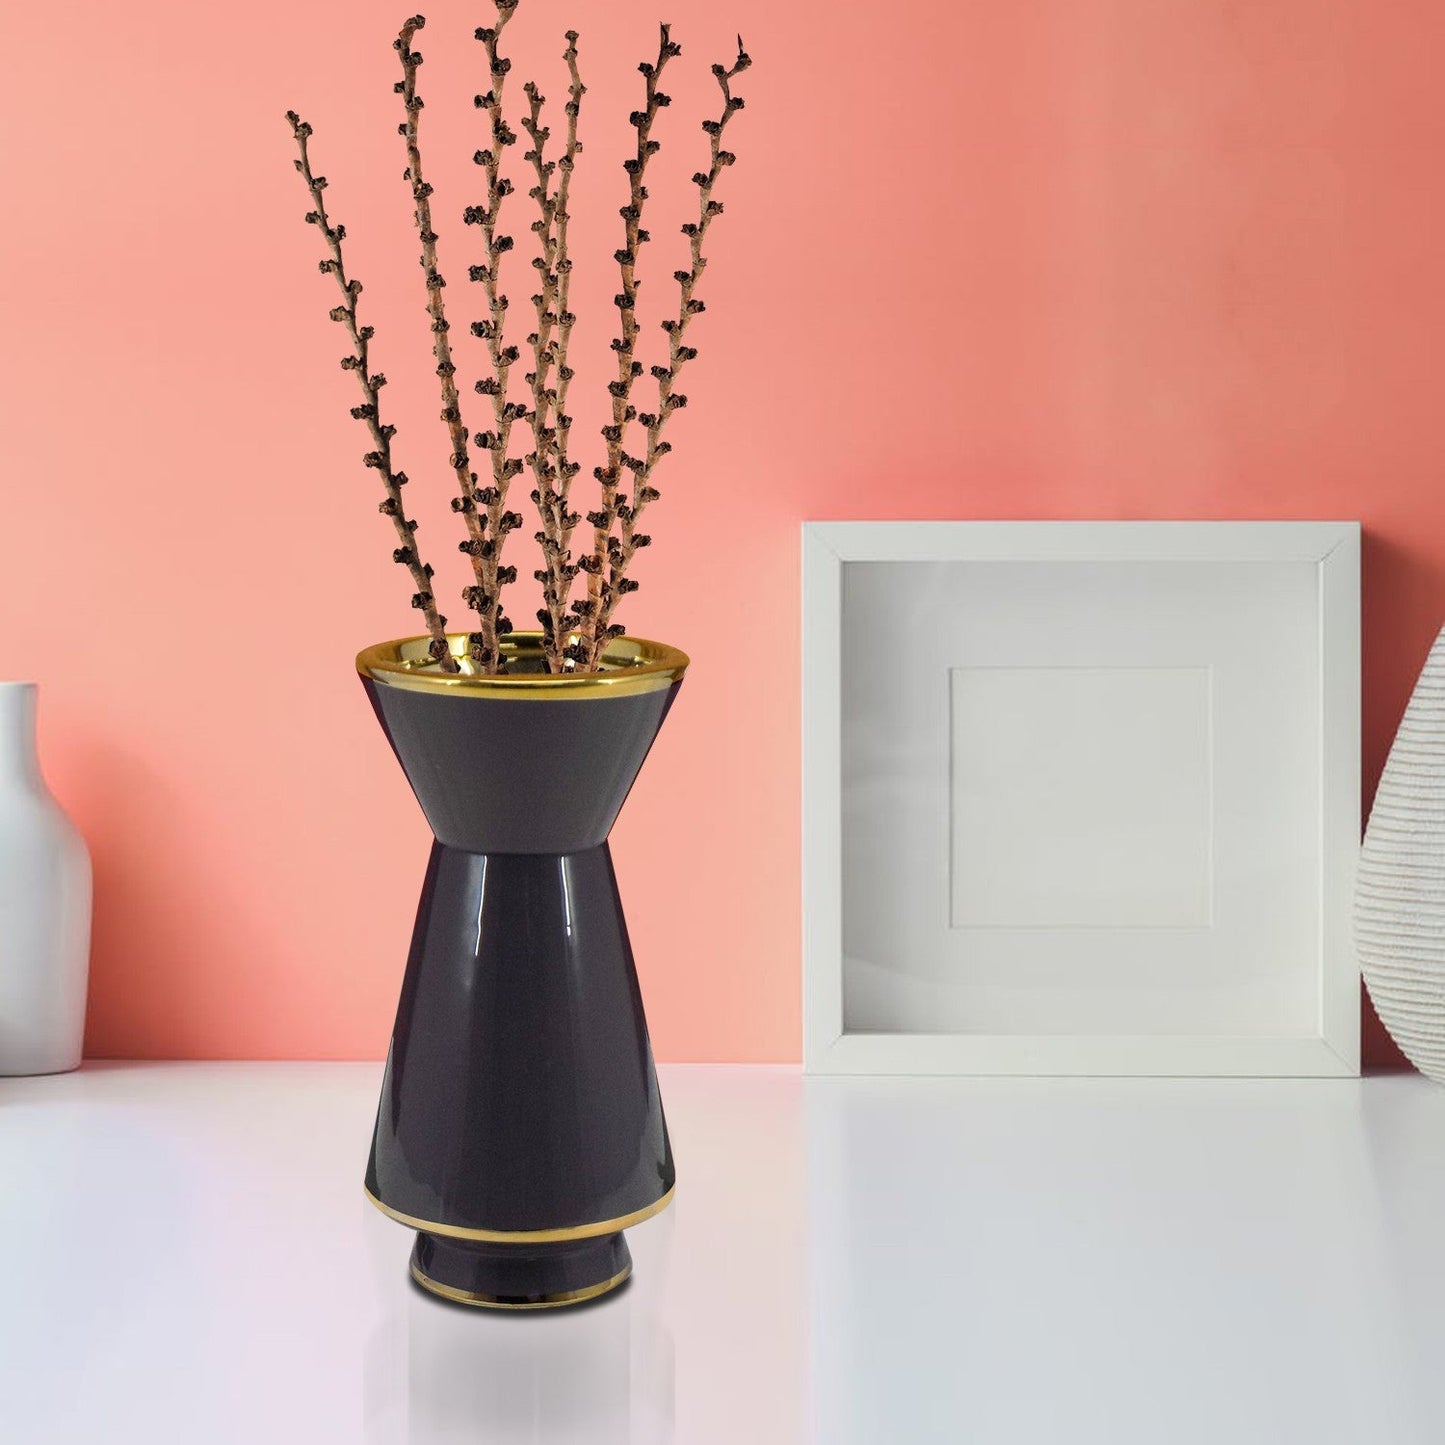 VON CASA Vase, Flower Vase, Unique Glazed Design, Decorative Vase, Grey, Ceramic